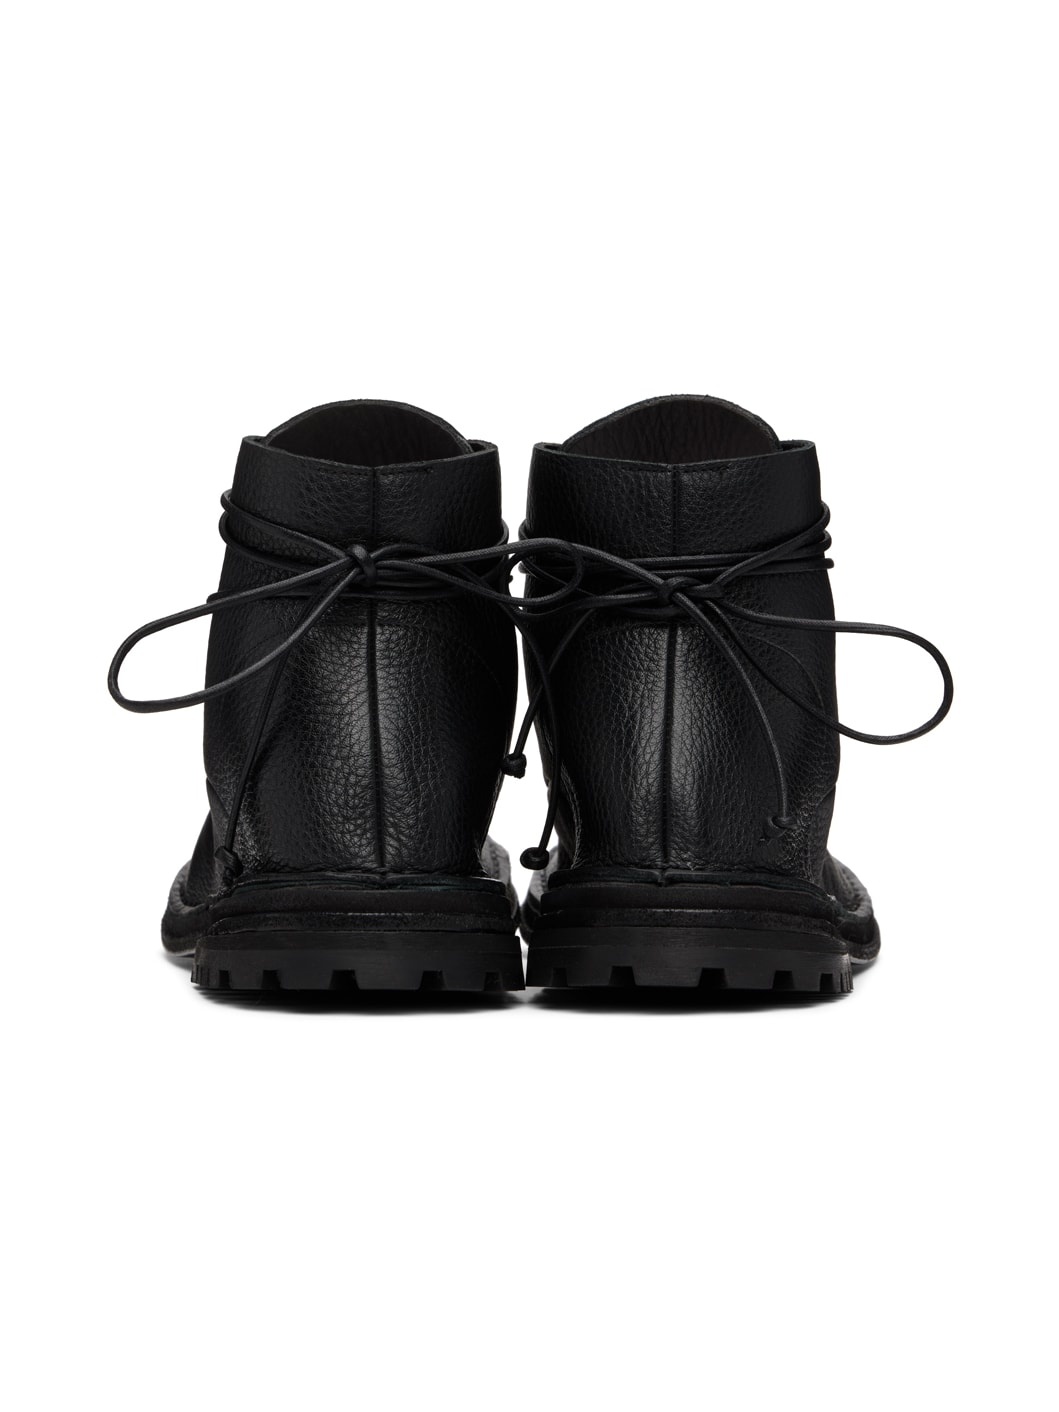 Black Fungaccio Boots - 2